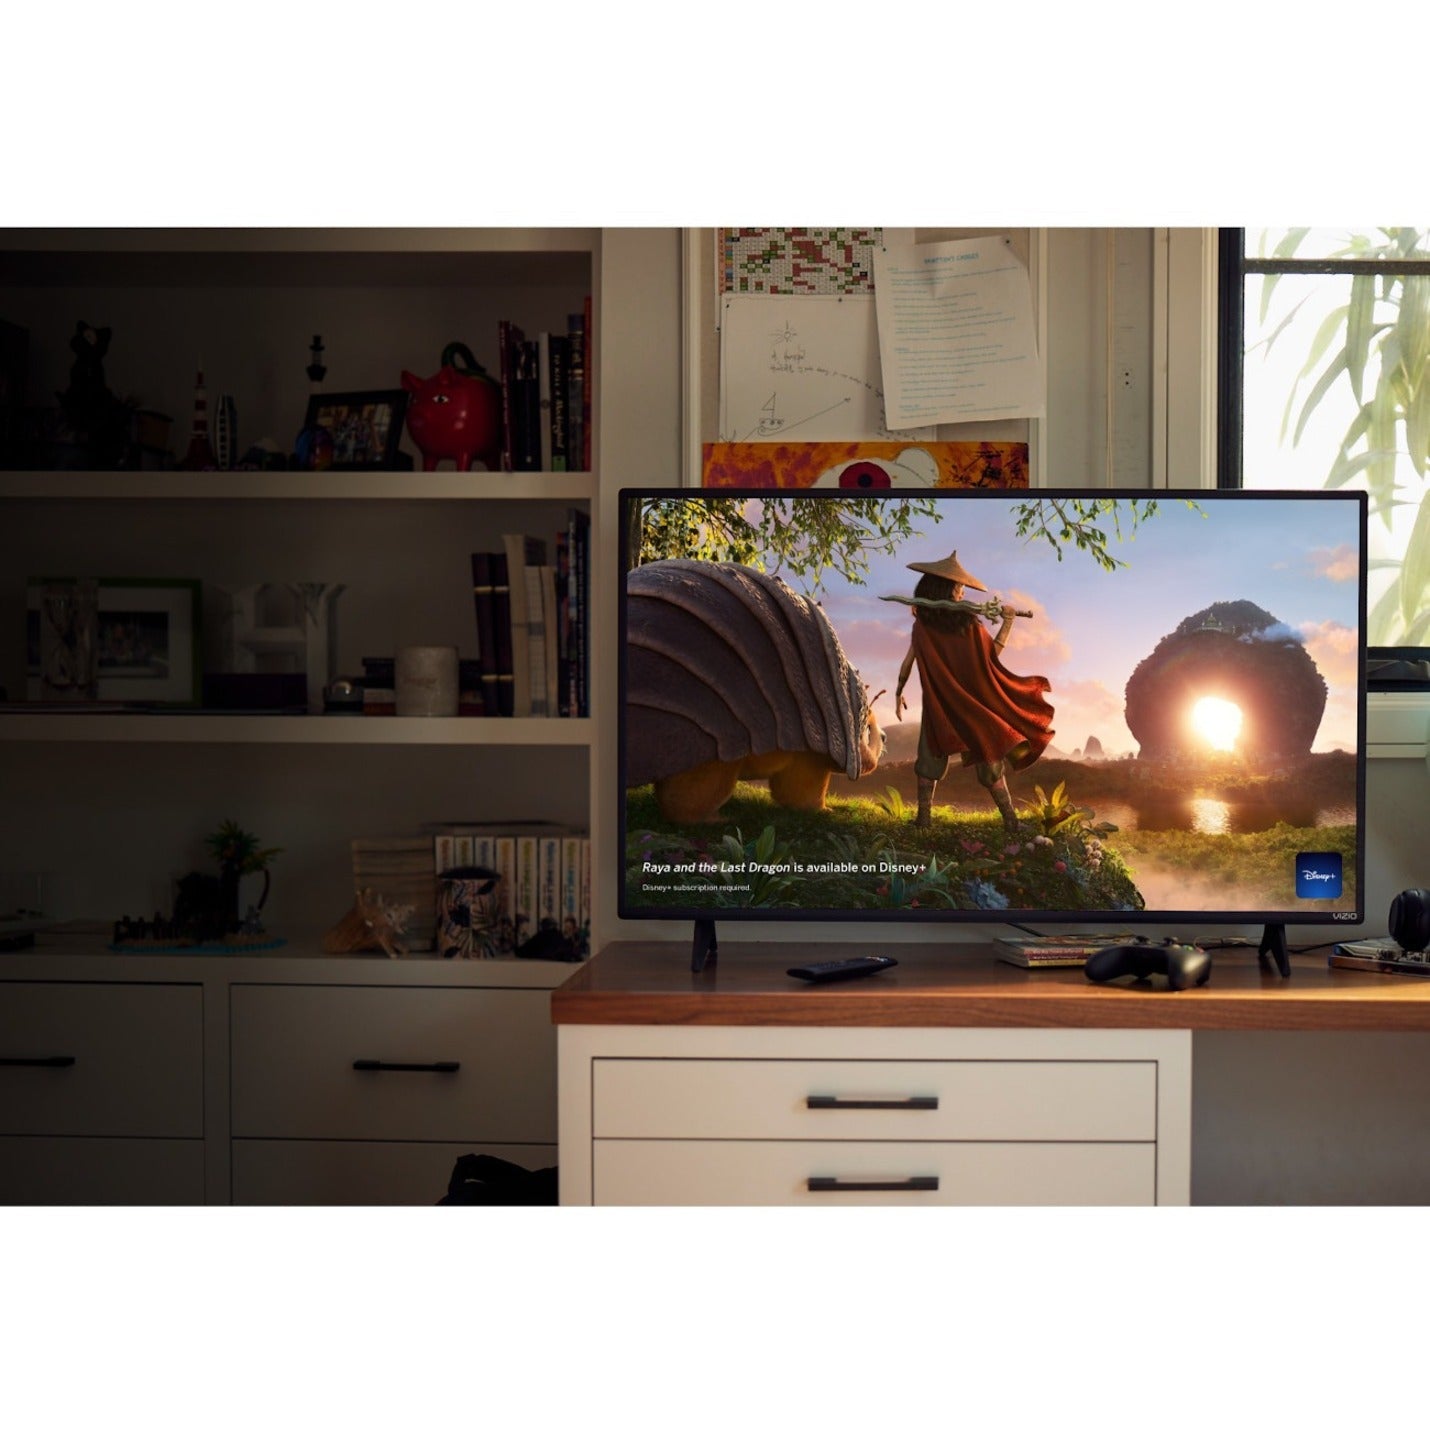 VIZIO D D24H-J09 23.5" Smart LED-LCD TV - HDTV